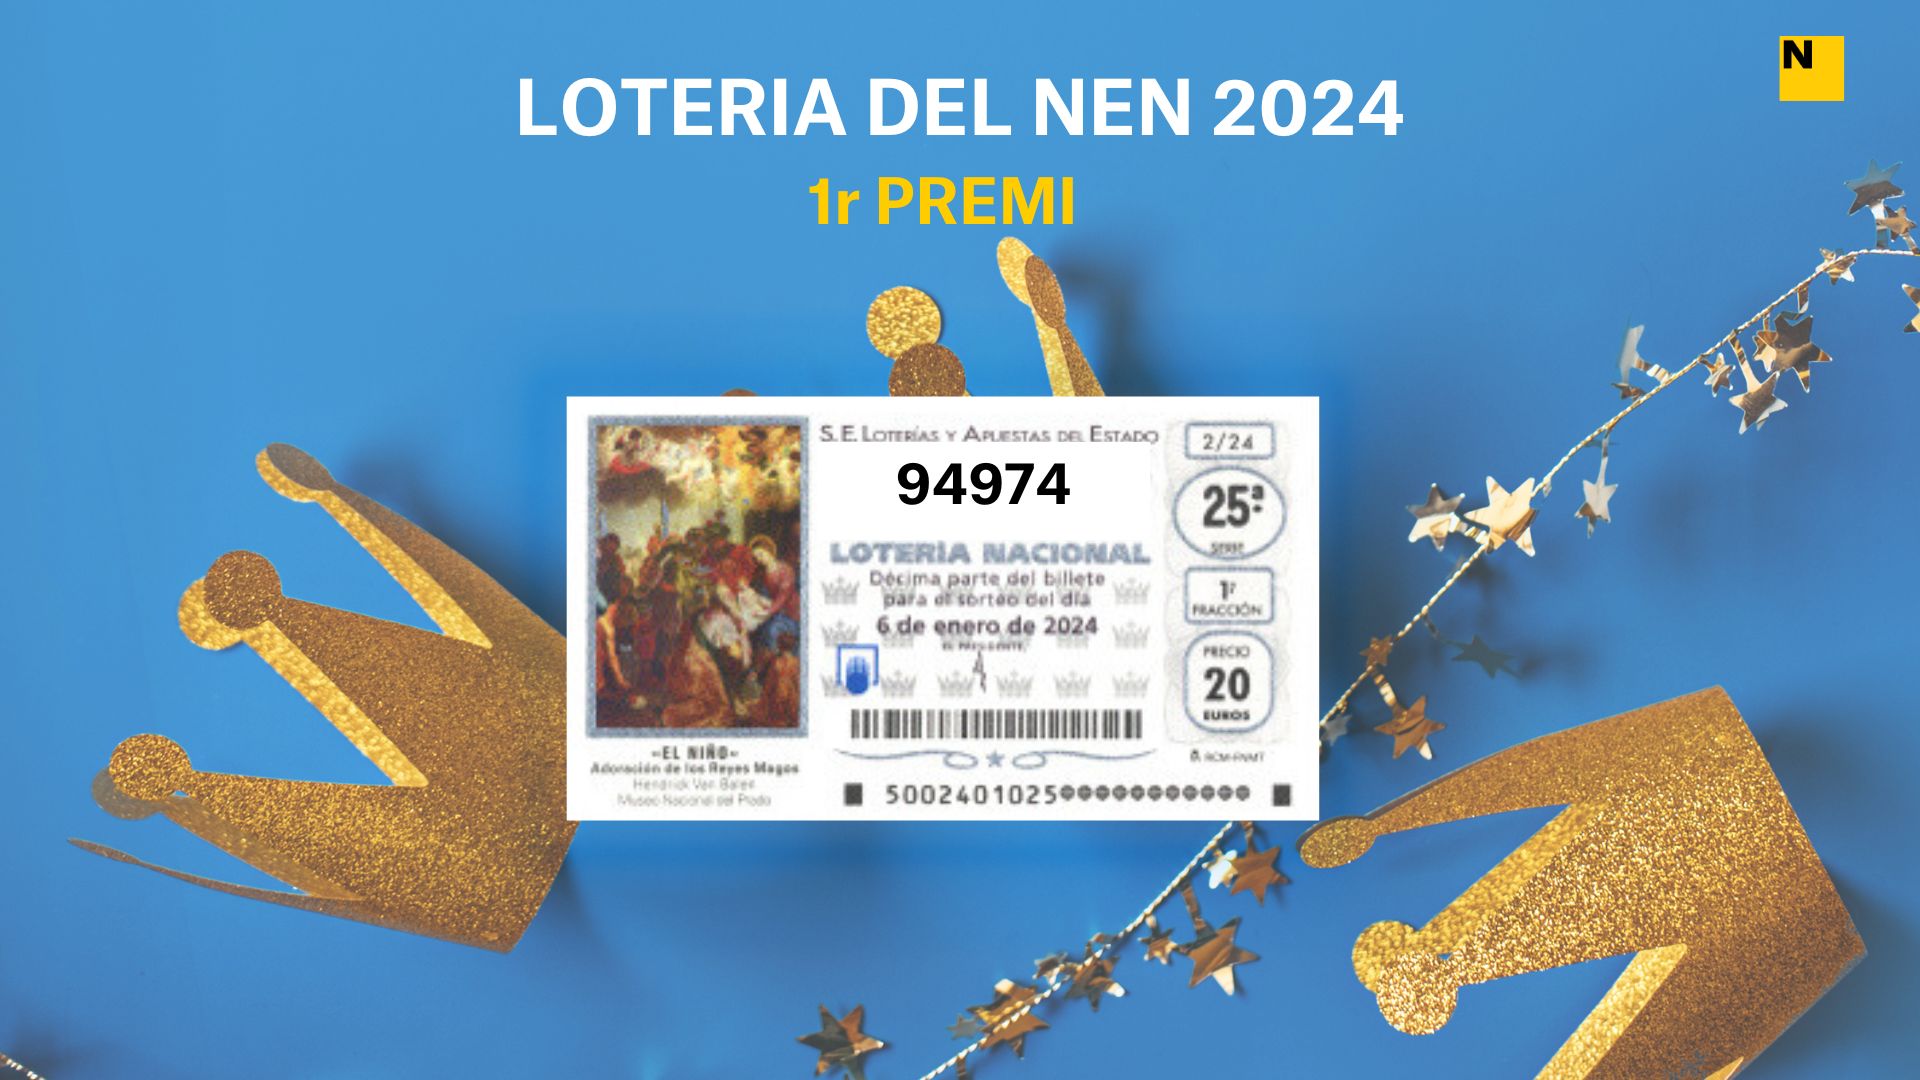 94974, el guanyador de la Loteria del Nen 2024: Comprova el primer premi del sorteig